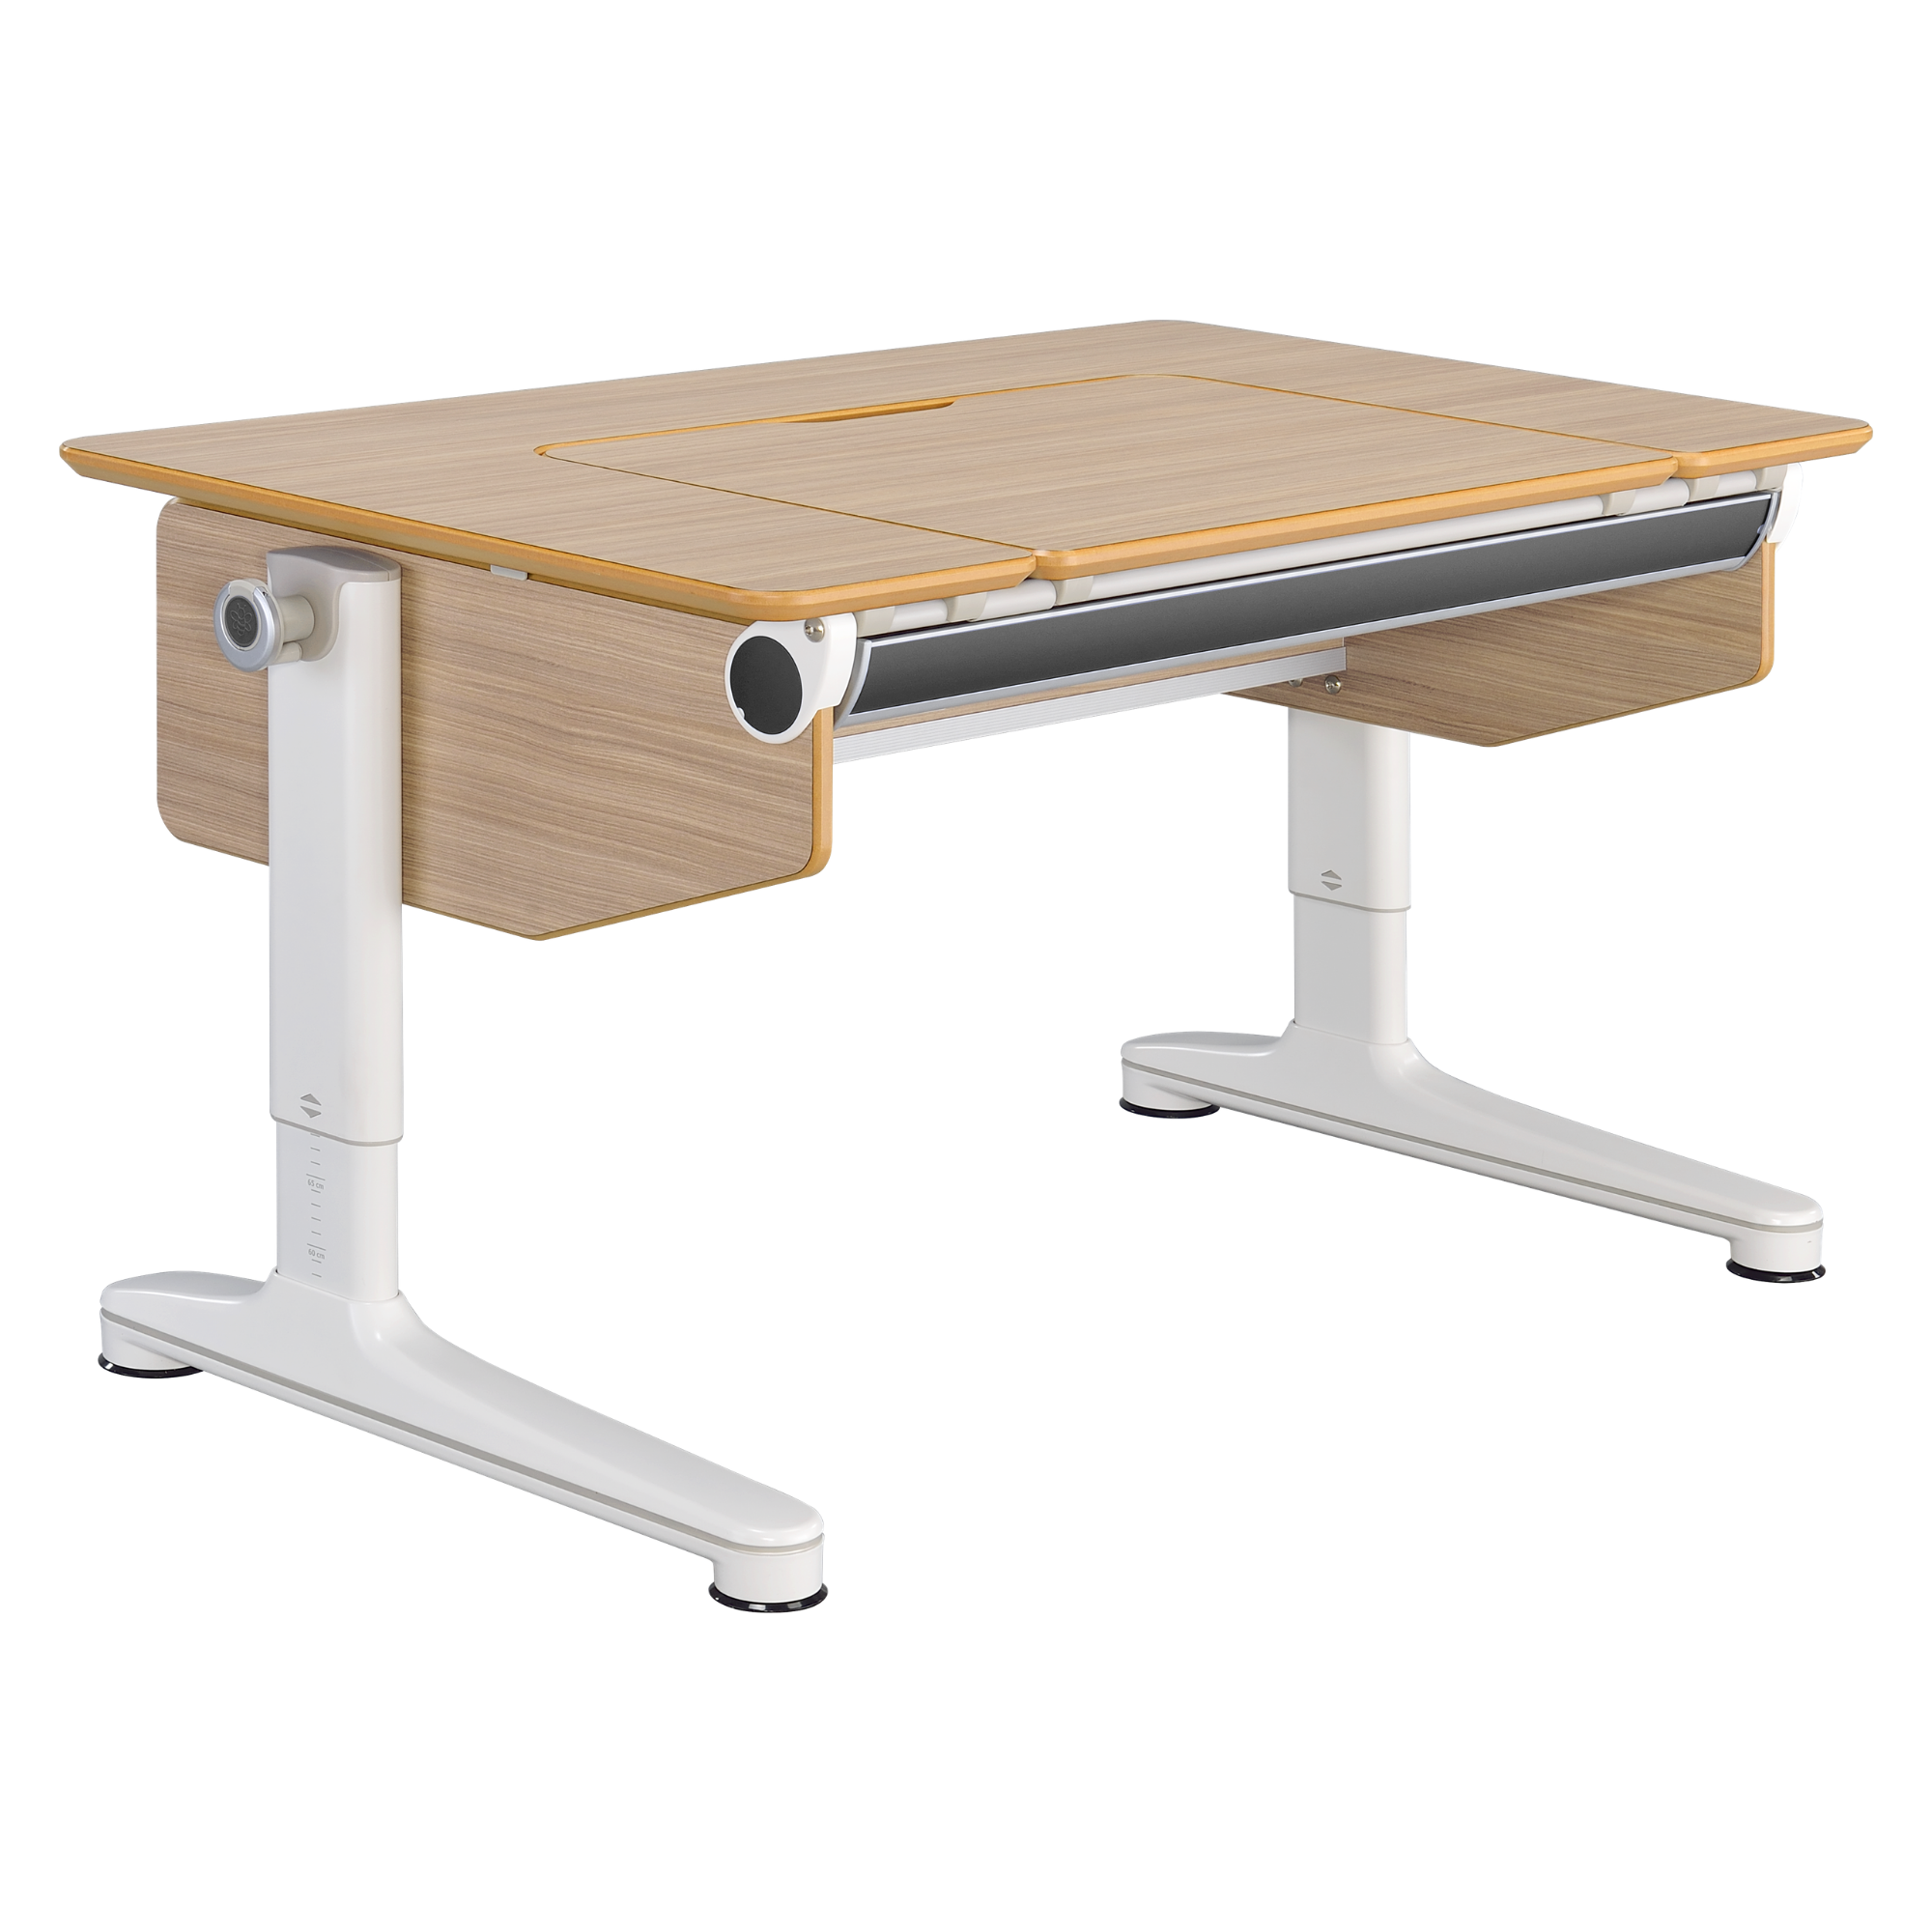 CB-603 Large U-Shape Adjustable Kids Desk - Furniture.Agency